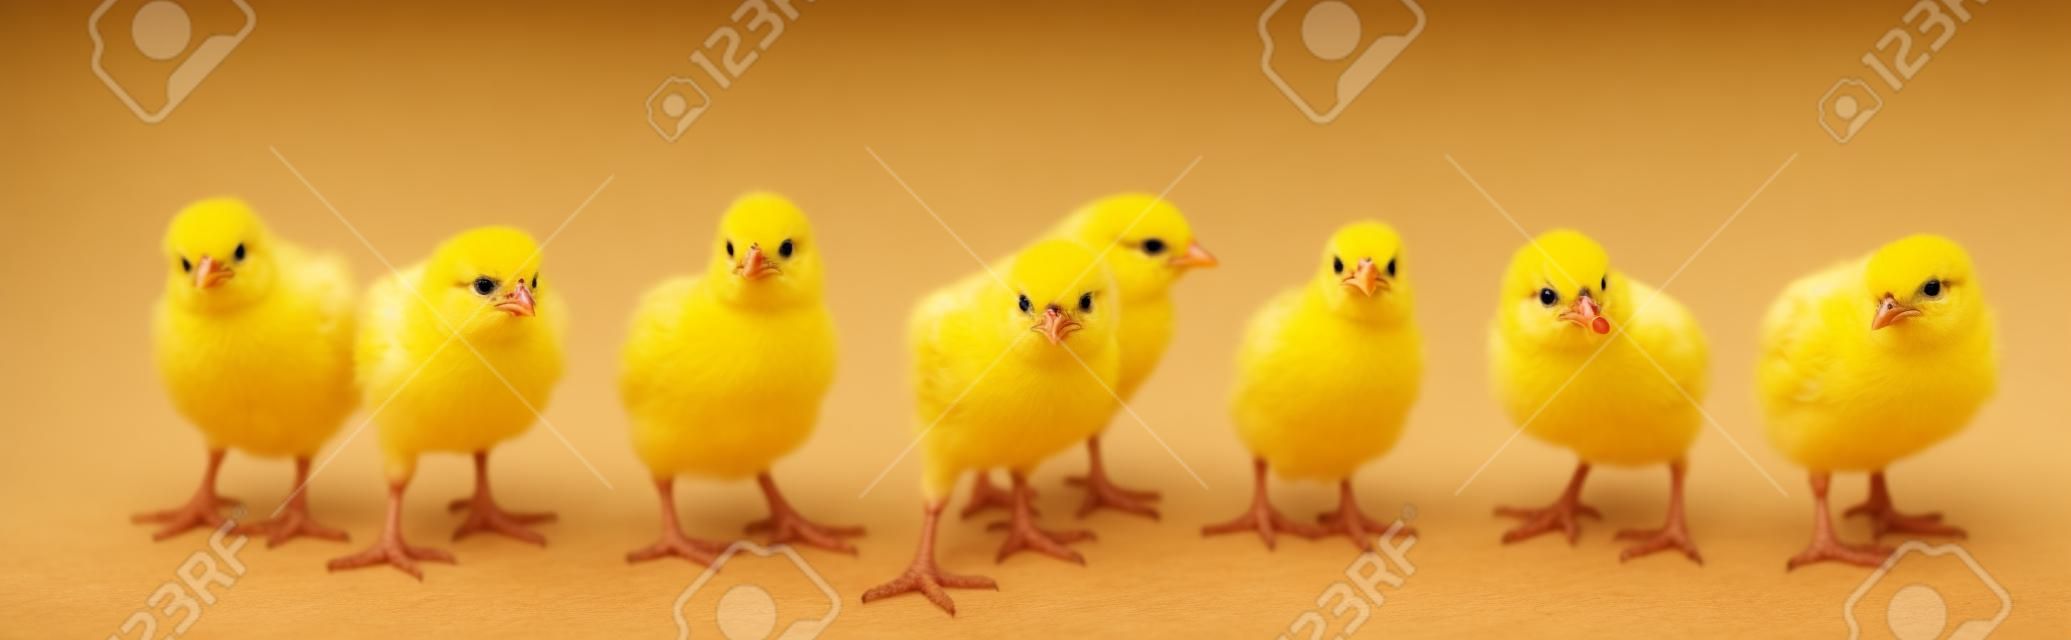 Panorama van broedende kleine gele kuikens geïsoleerd op witte achtergrond. Boerderij incubator kippen op wandeling.